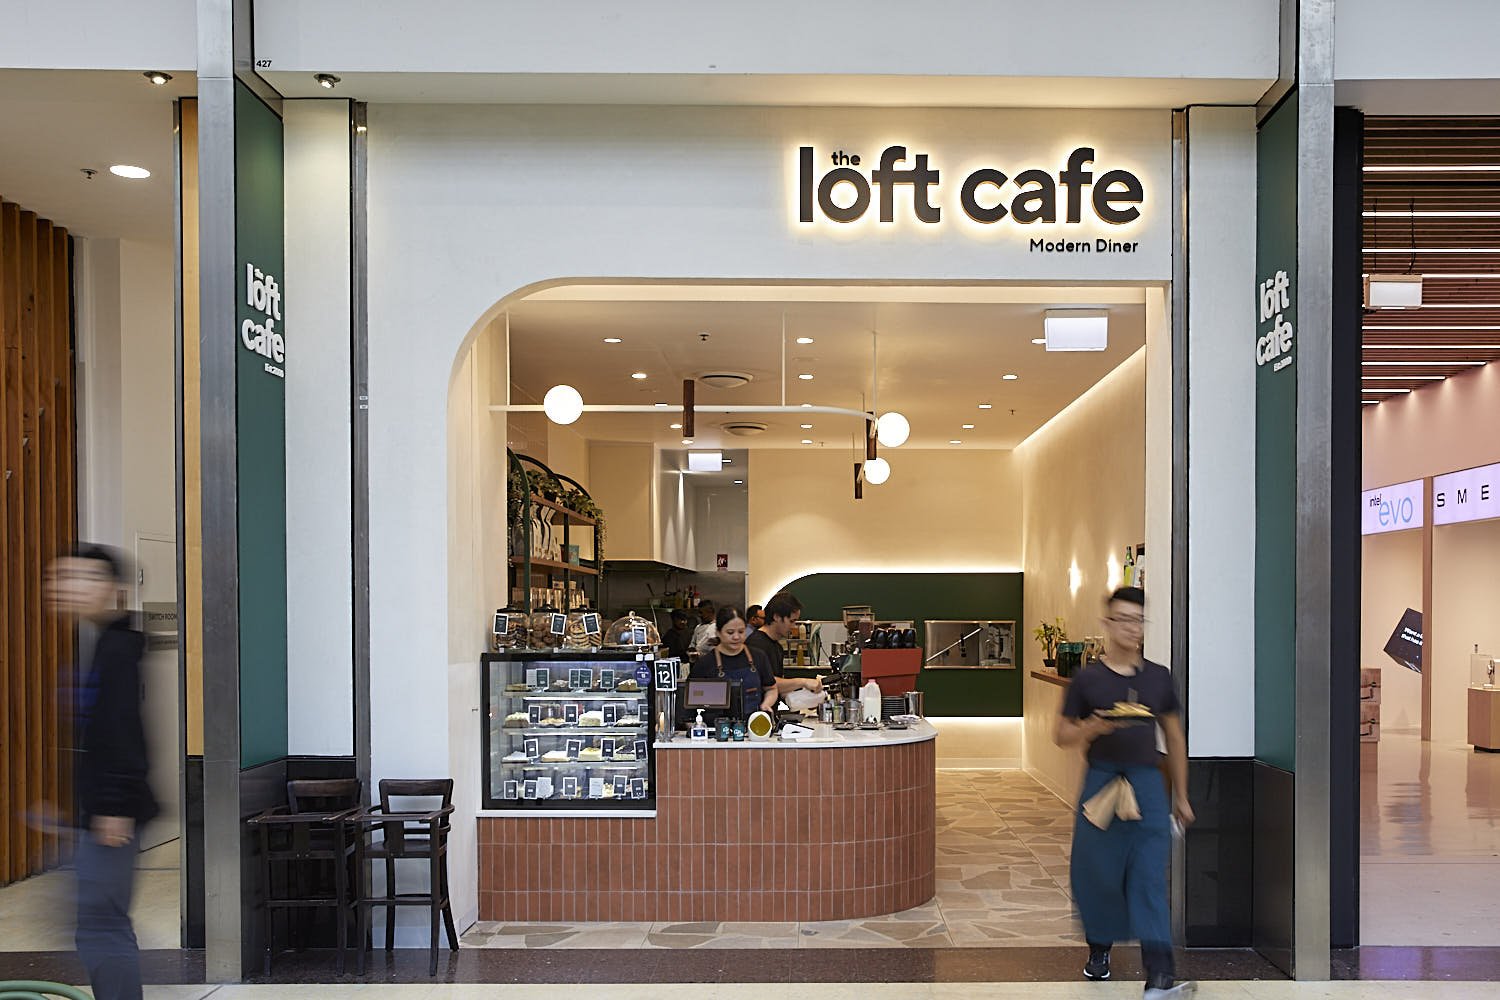 The Loft Cafe